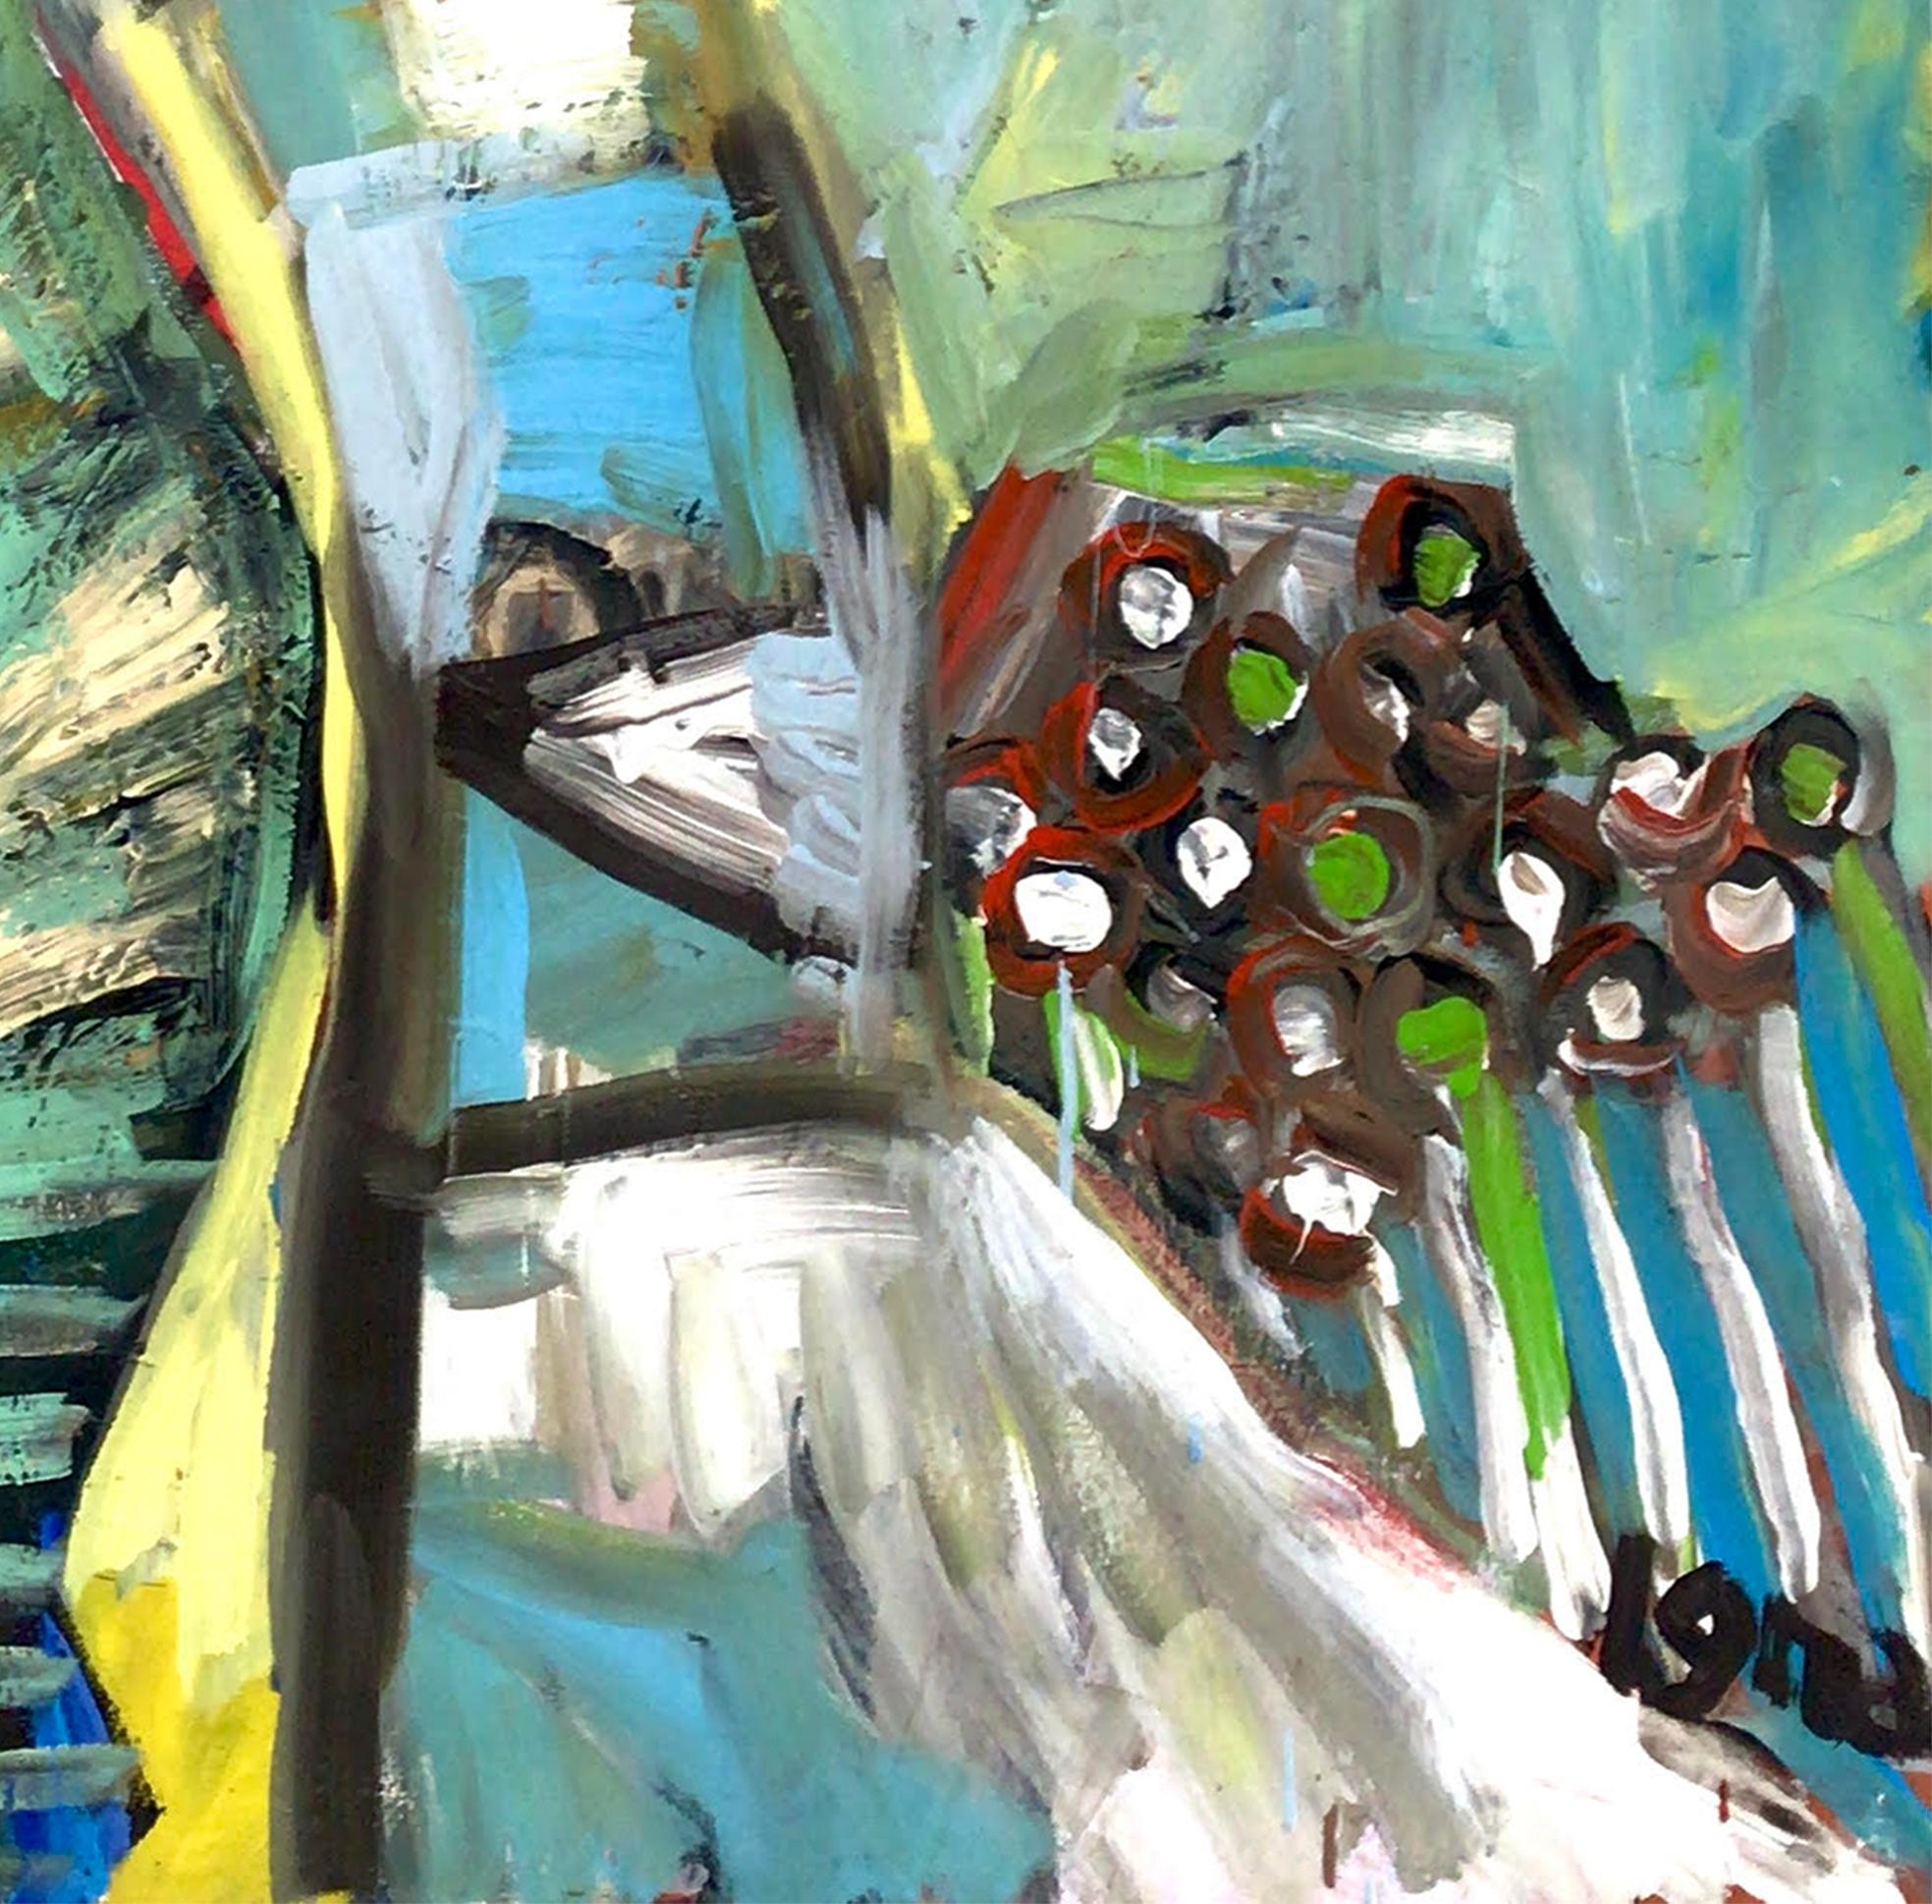 Coqueiros de Klee, 2013 par José Ignacio Suarez Solis
De la série Matas
Peinture acrylique sur toile
Taille : 90 H x 90 L cm.
Non encadré
_____
Fils de parents cubains, José Ignacio Suarez Solis est arrivé à Rio de Janeiro pendant son enfance et